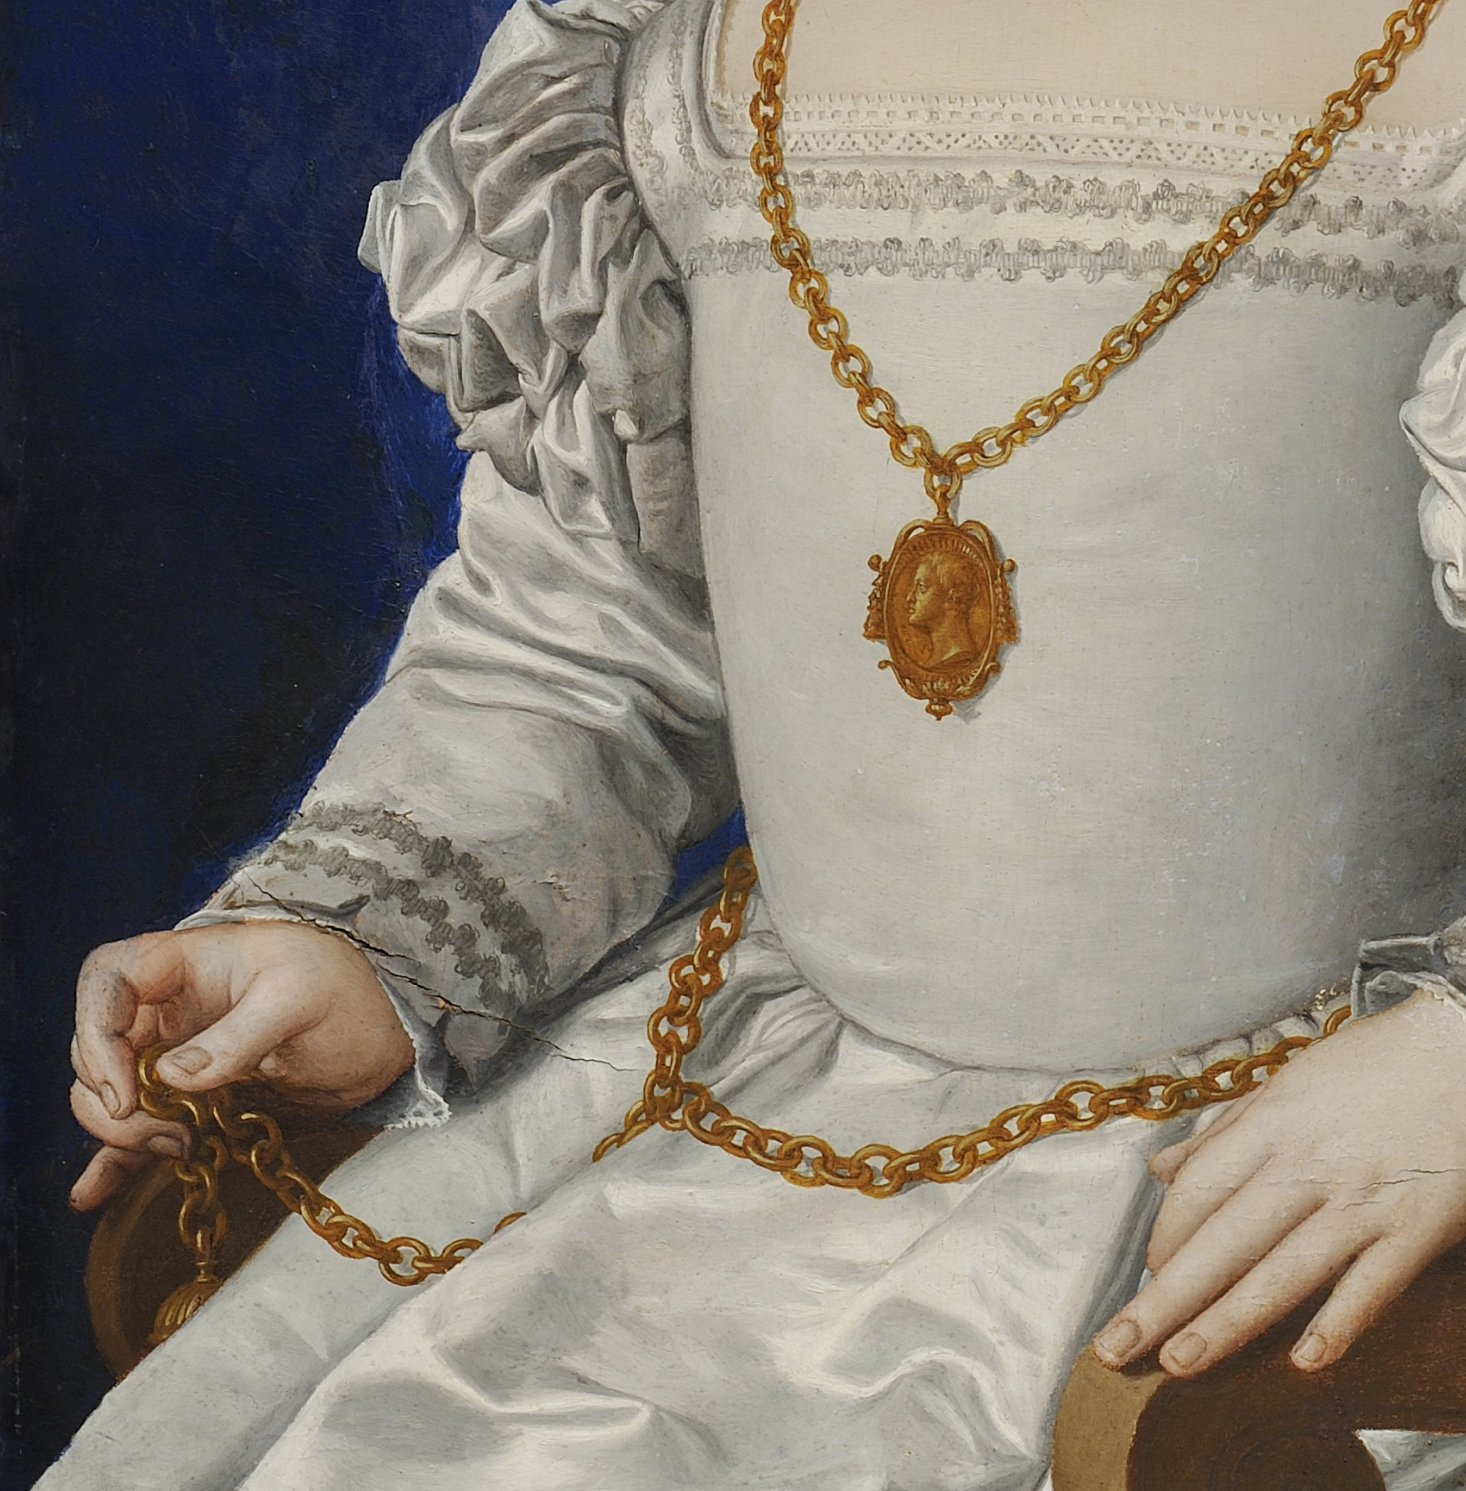 Believed to be Bia di Cosimo de’ Medici, the illegitimate daughter of Cosimo I de’ Medici, by Agnolo Bronzino, 1542.